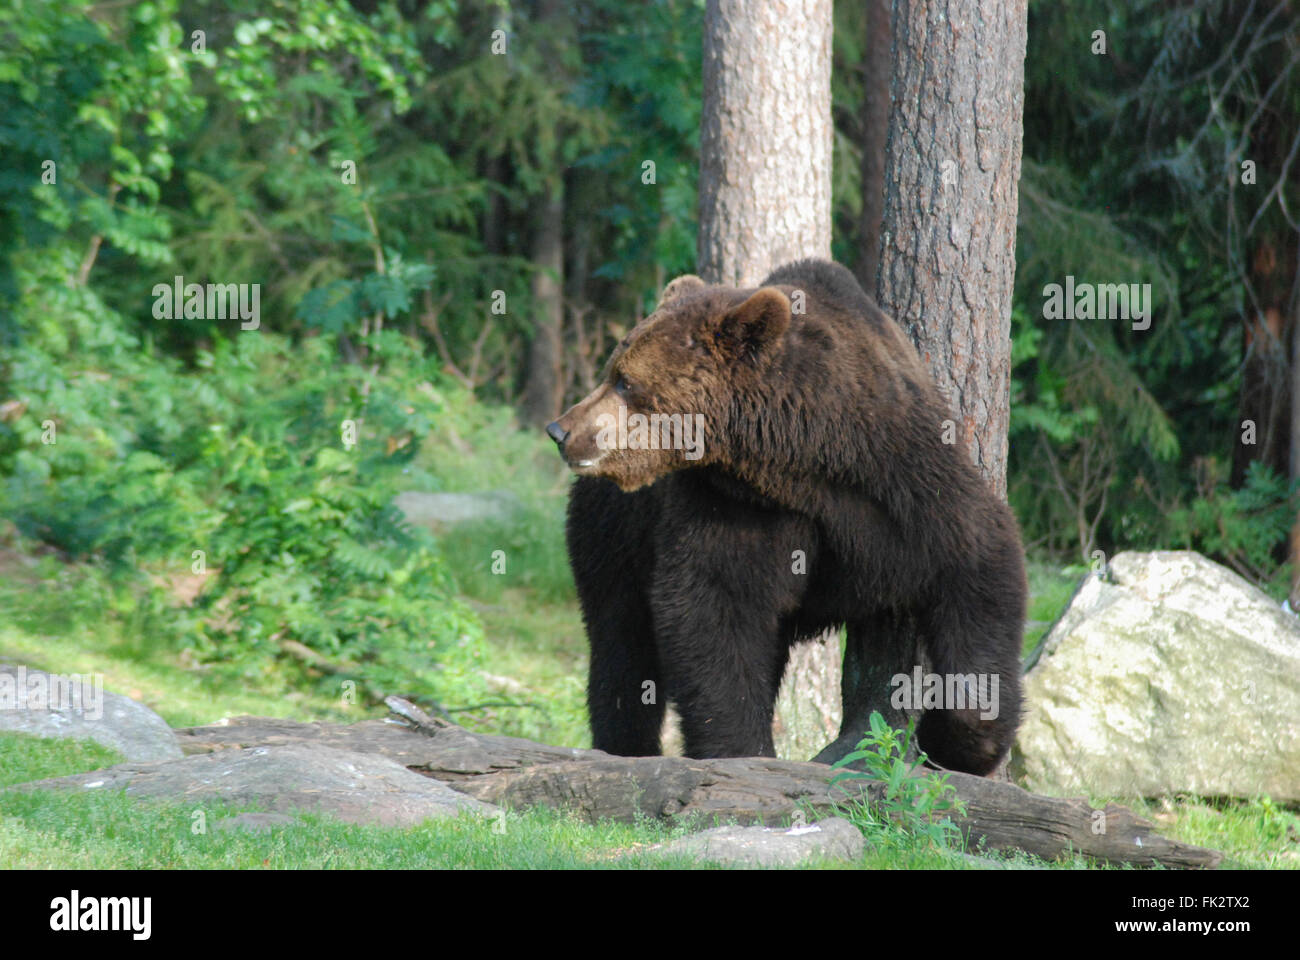 Unione di orso bruno eurasiatico o l'orso bruno (Ursus arctos arctos) nella Taiga foresta in Finlandia orientale. Foto Stock